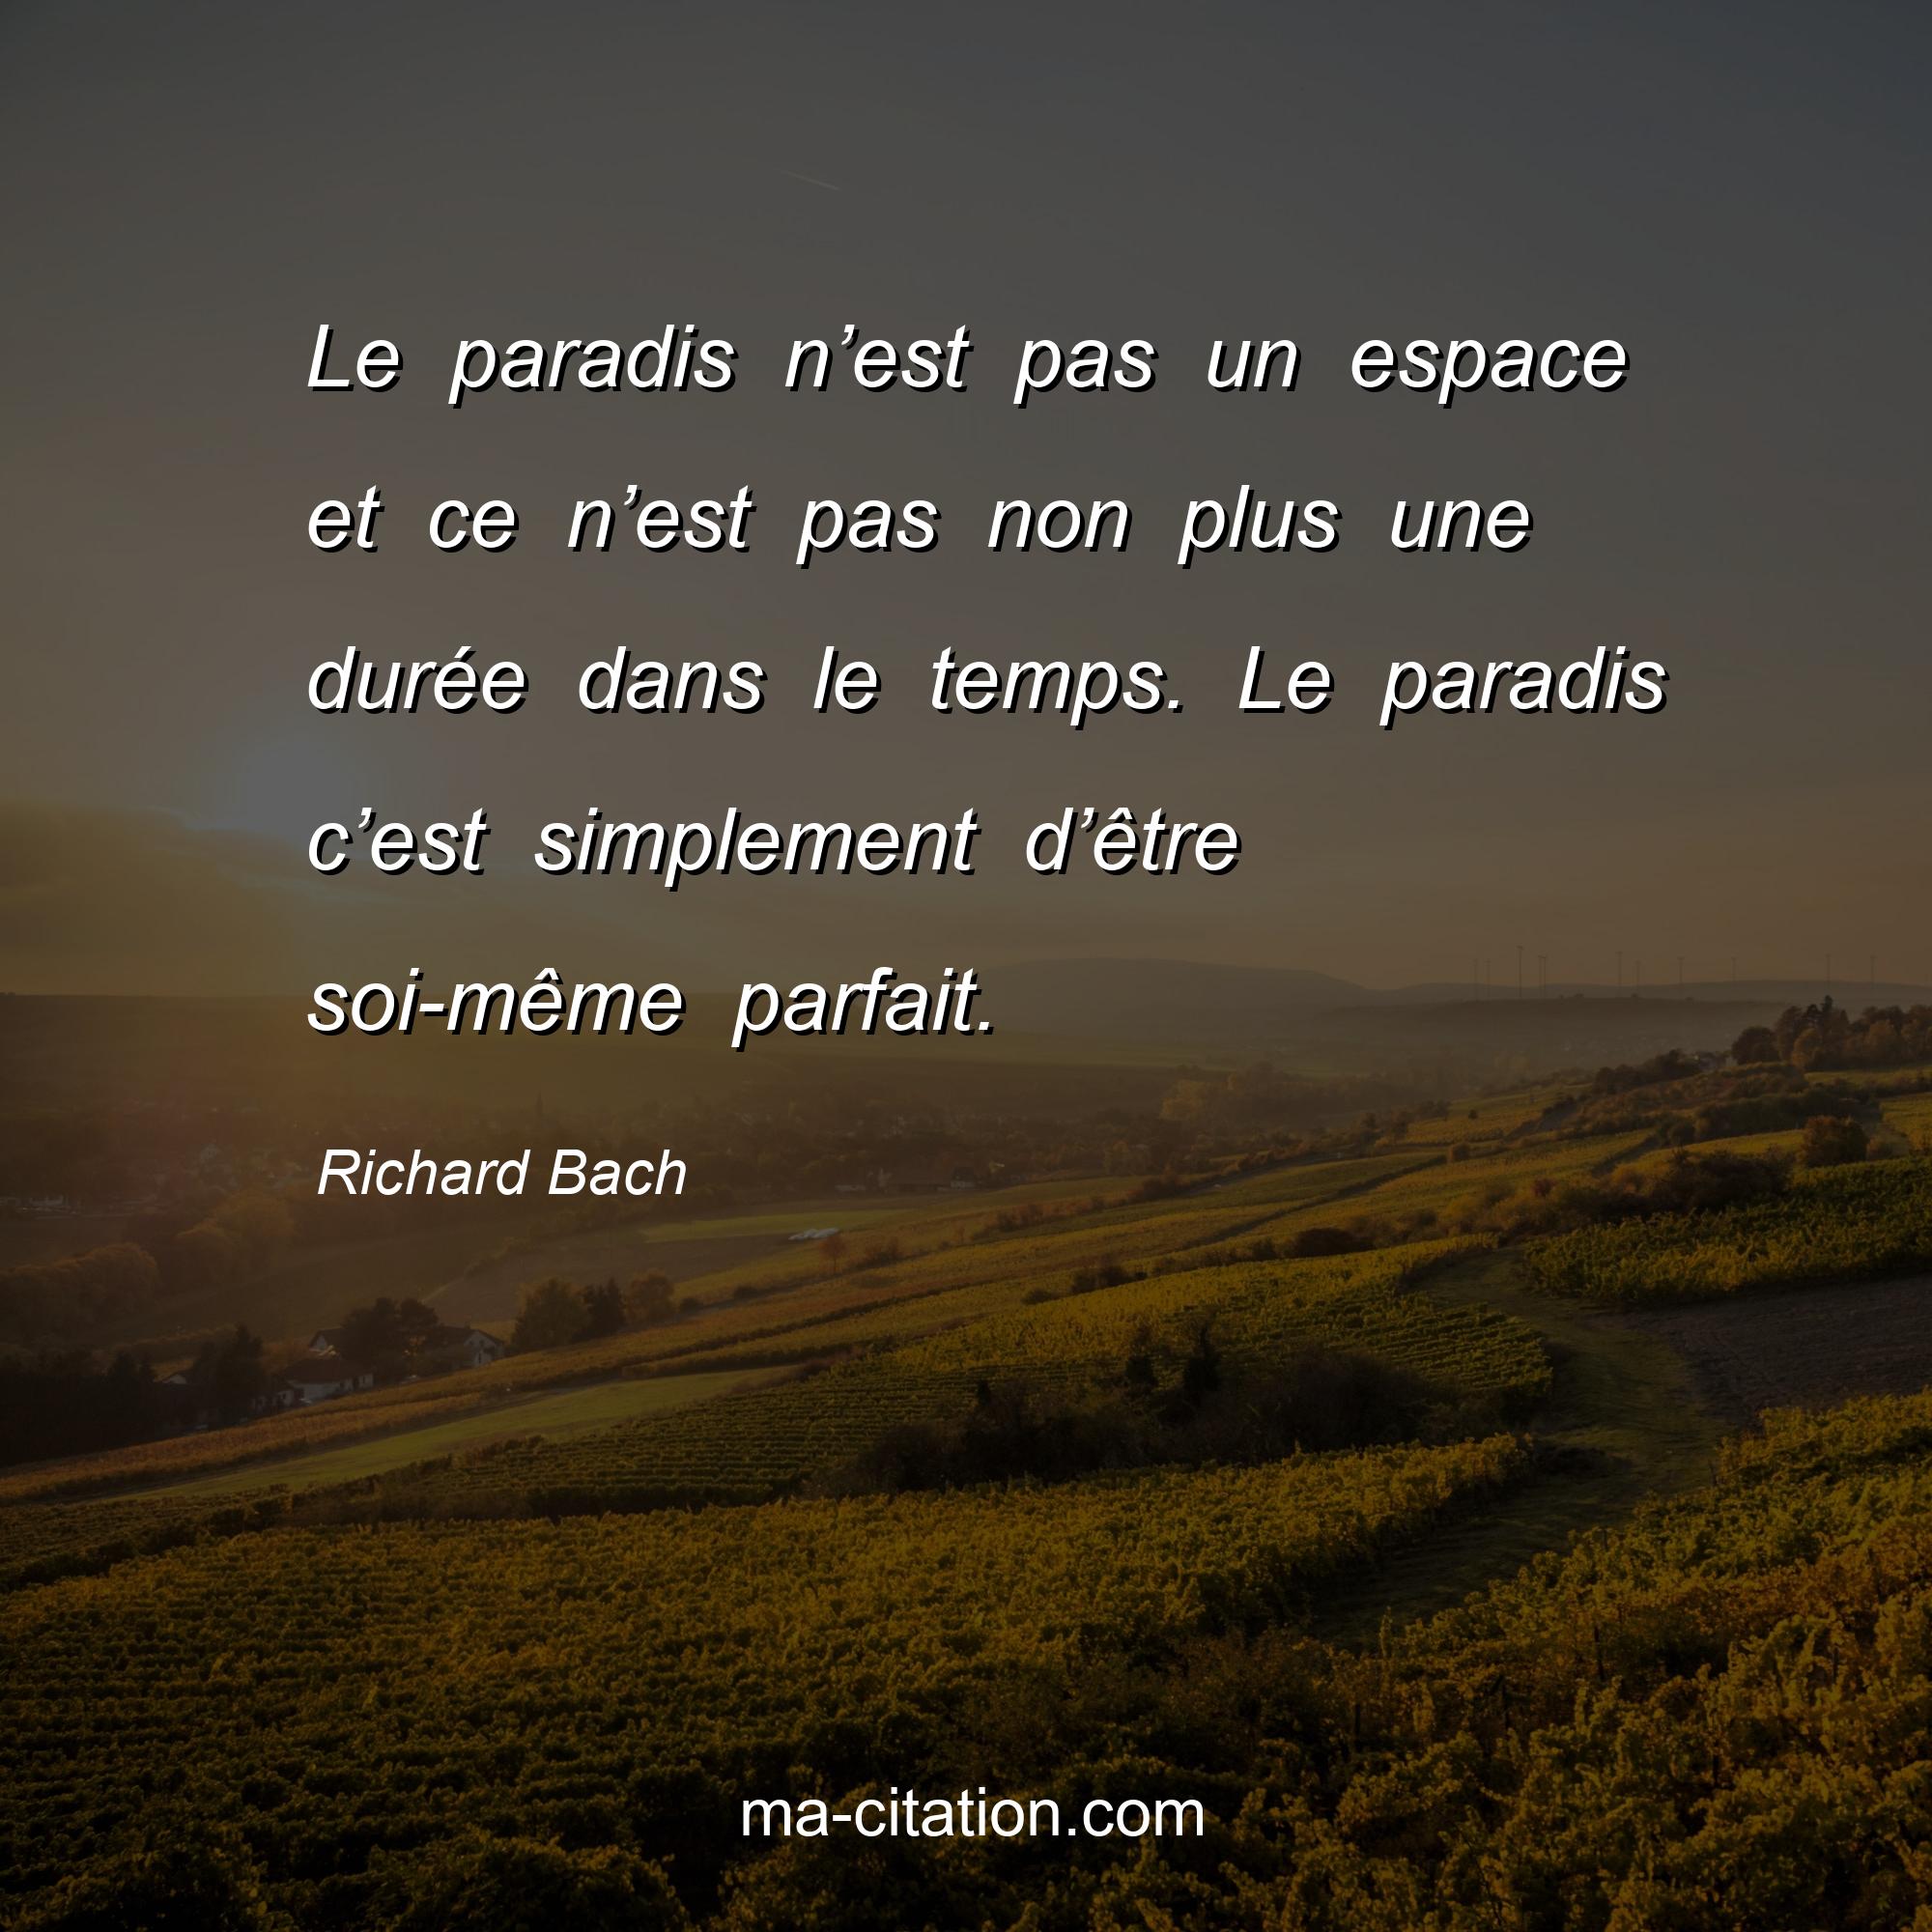 Richard Bach : Le paradis n’est pas un espace et ce n’est pas non plus une durée dans le temps. Le paradis c’est simplement d’être soi-même parfait.